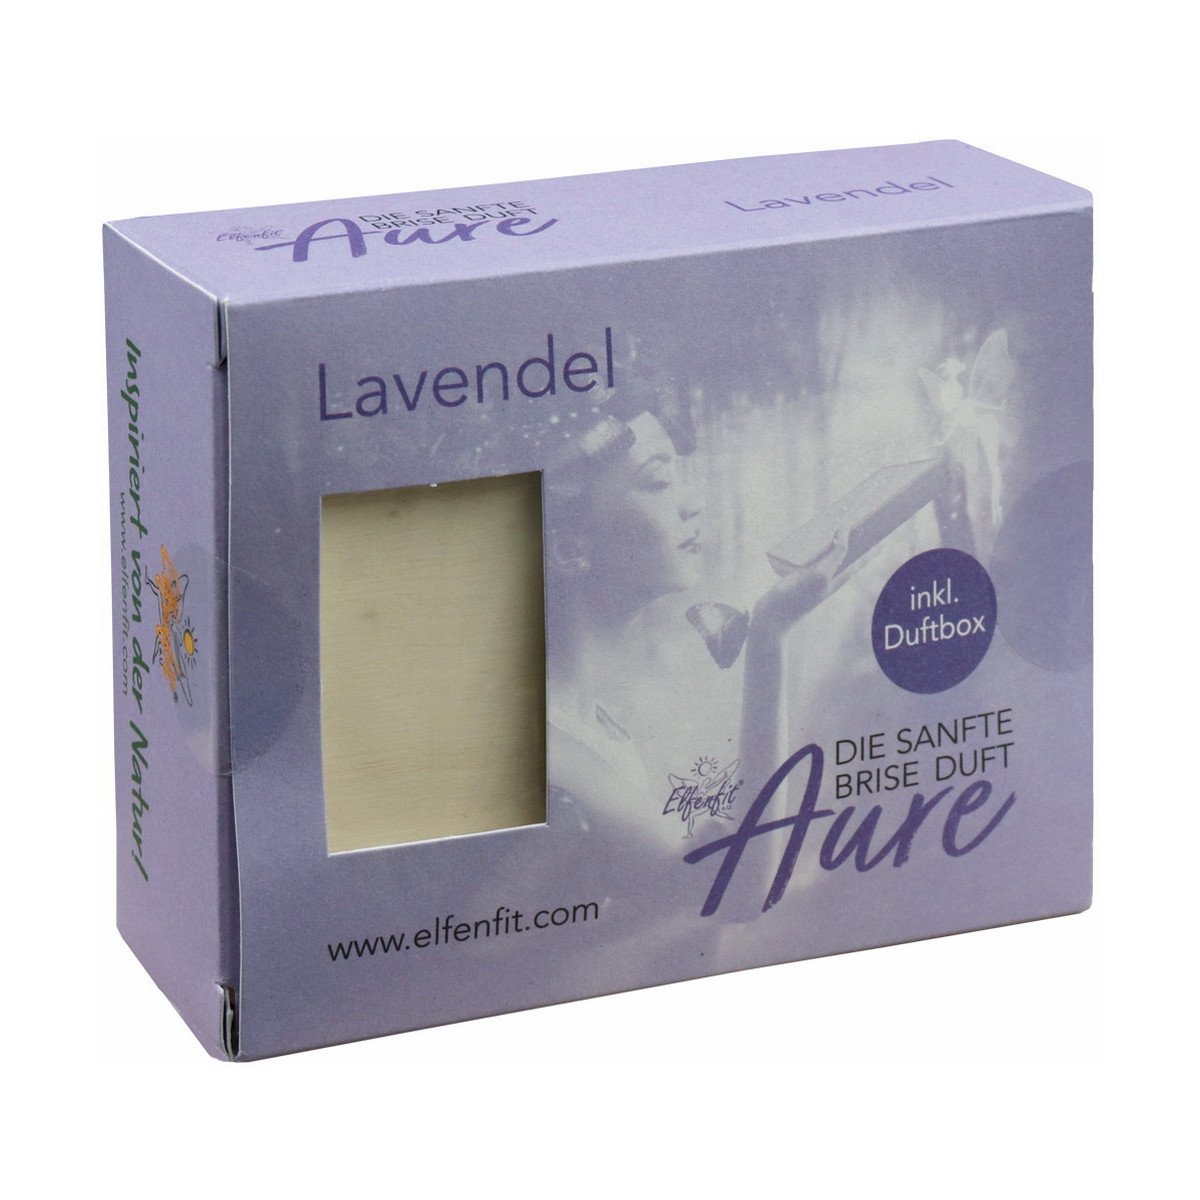 Elfenfit Aure Lavendel mit Duftbox klein - Die sanfte...